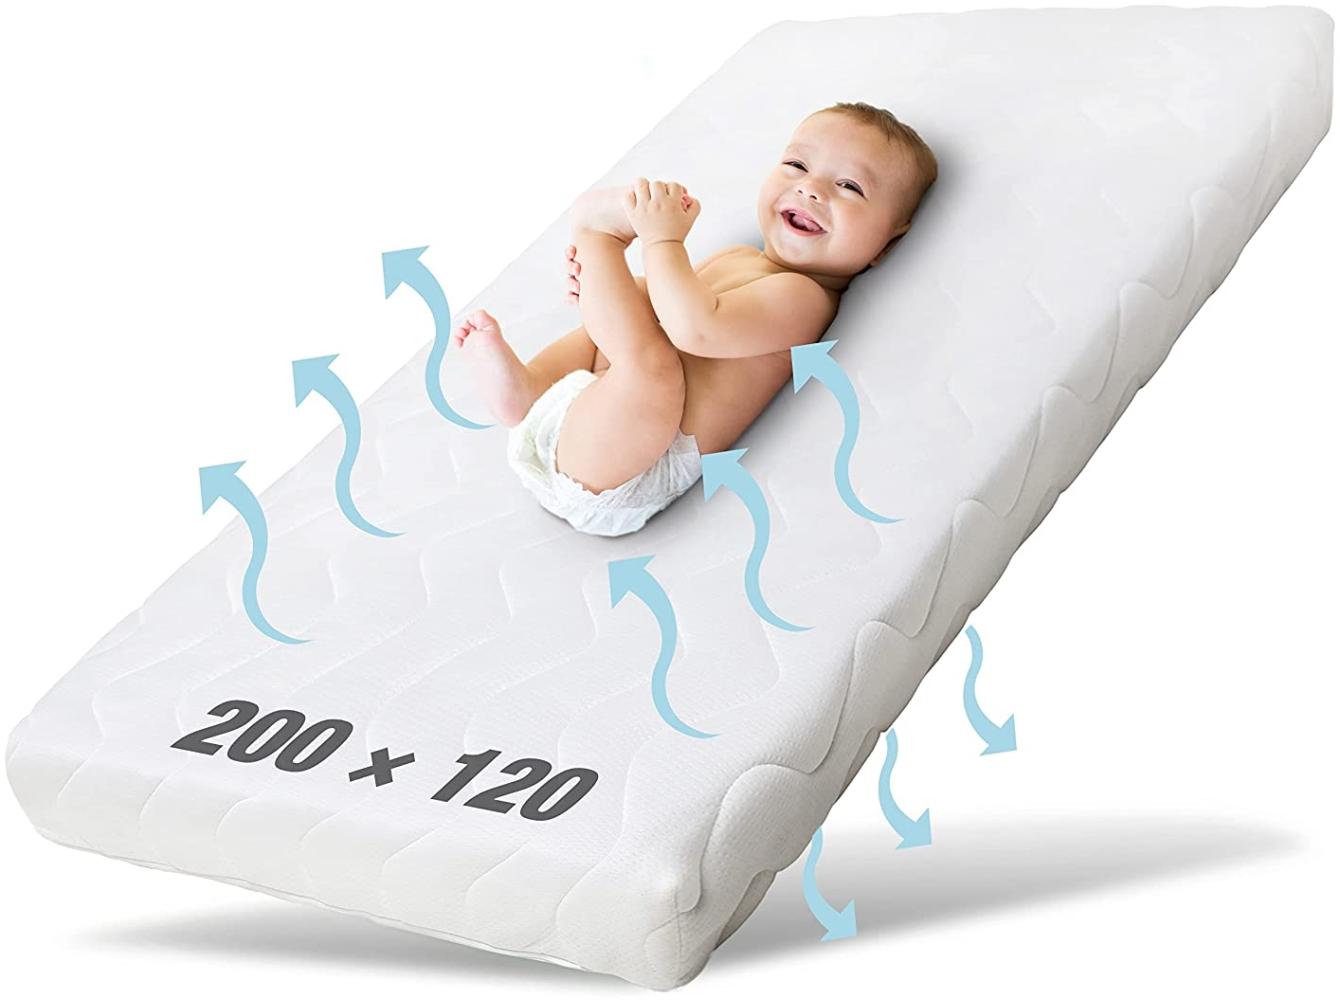 Ehrenkind® Kindermatratze Pur | Baby Matratze 120x200 | Babymatratze 120x200 aus hochwertigem Schaum und Hygienebezug Bild 1